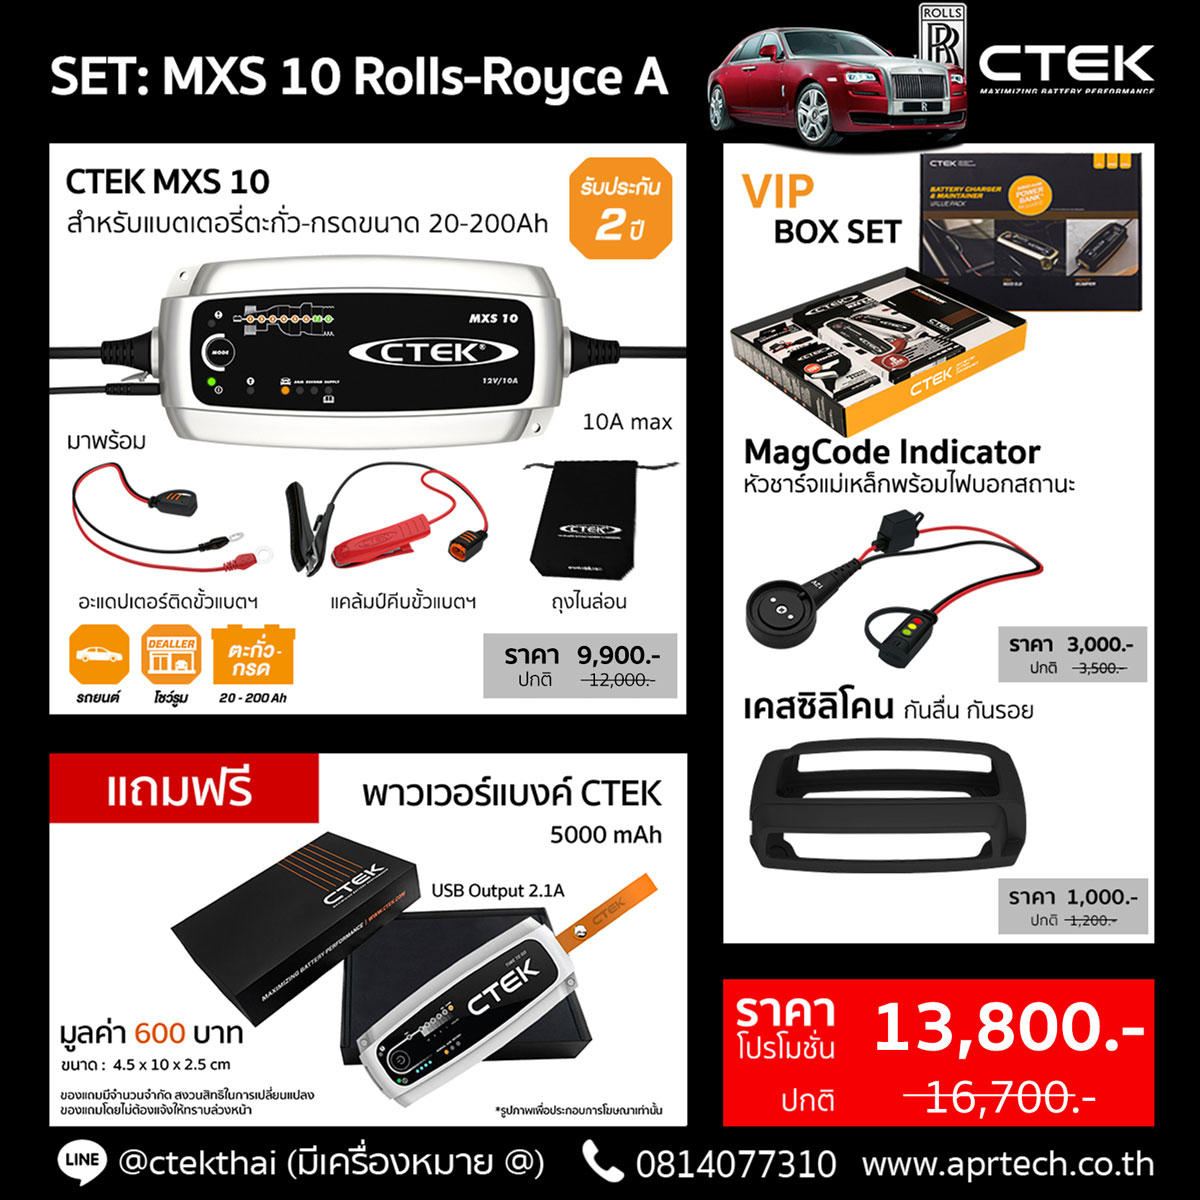 SET CTEK MXS 10 Rolls-Royce A (CTEK MXS 10 + MagCode Indicator + Bumper)